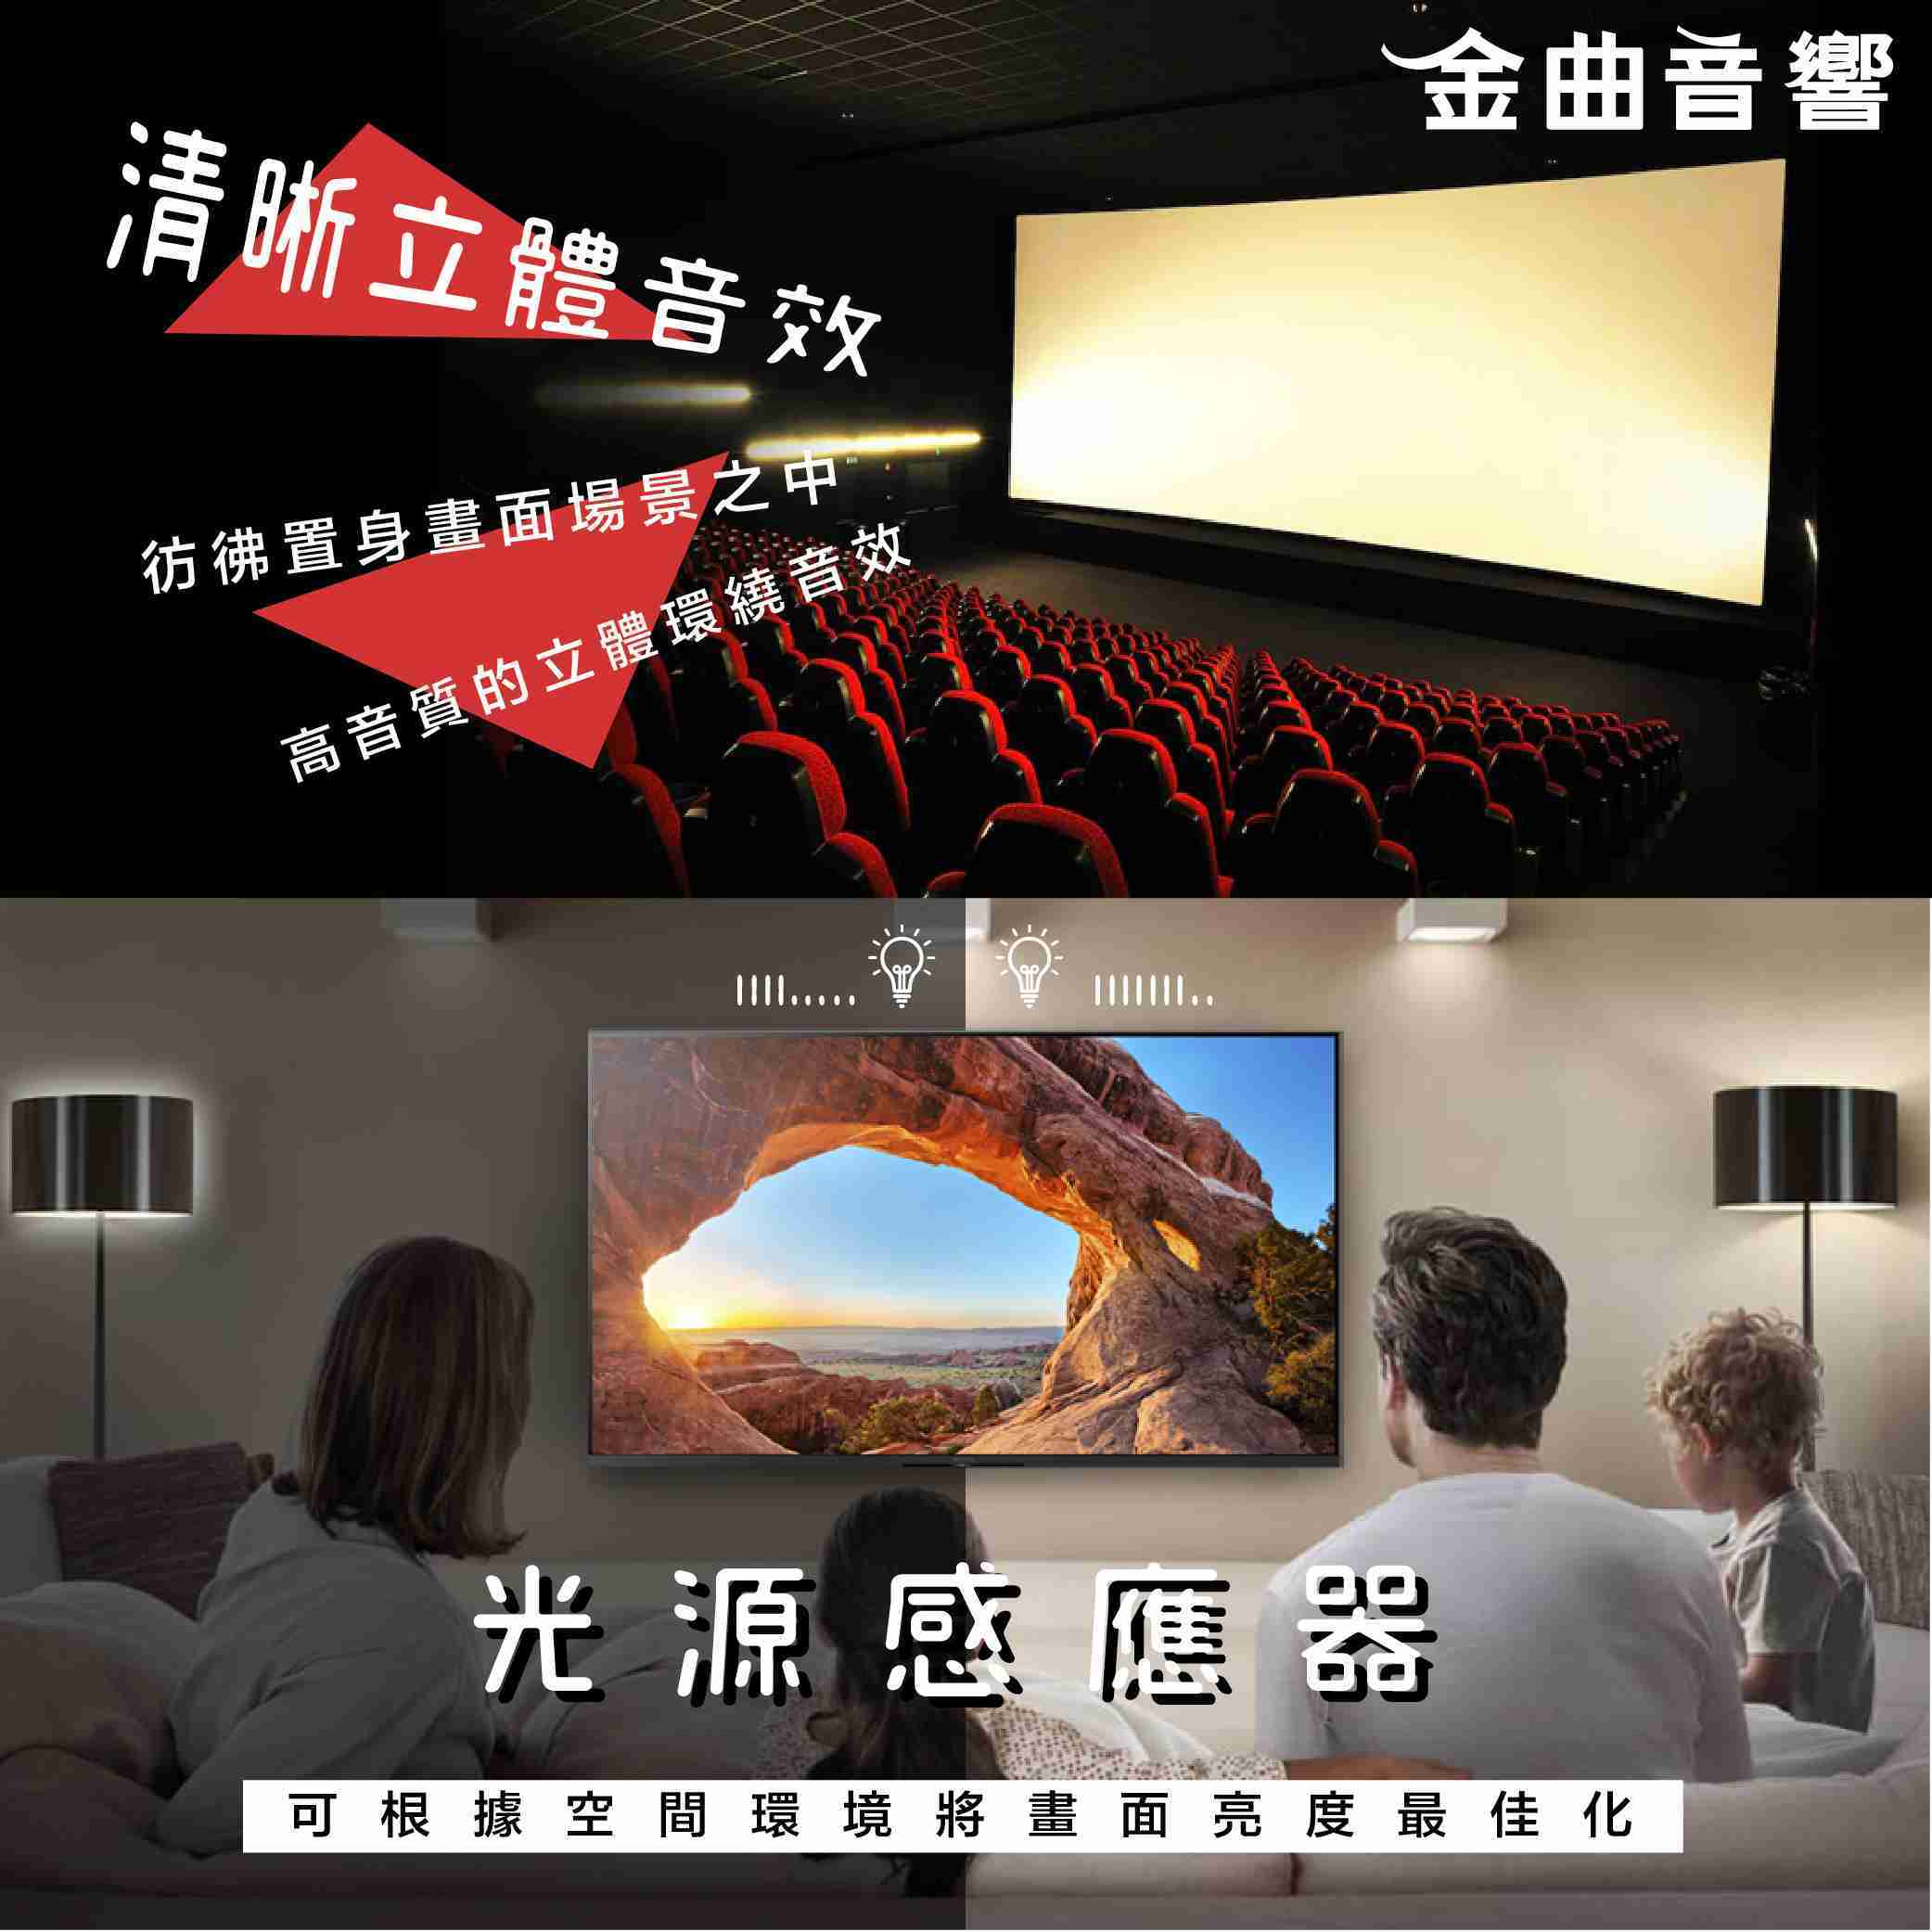 SONY 索尼 KM-75X85J 75吋 4K HDR Google TV 電視 2021 | 金曲音響